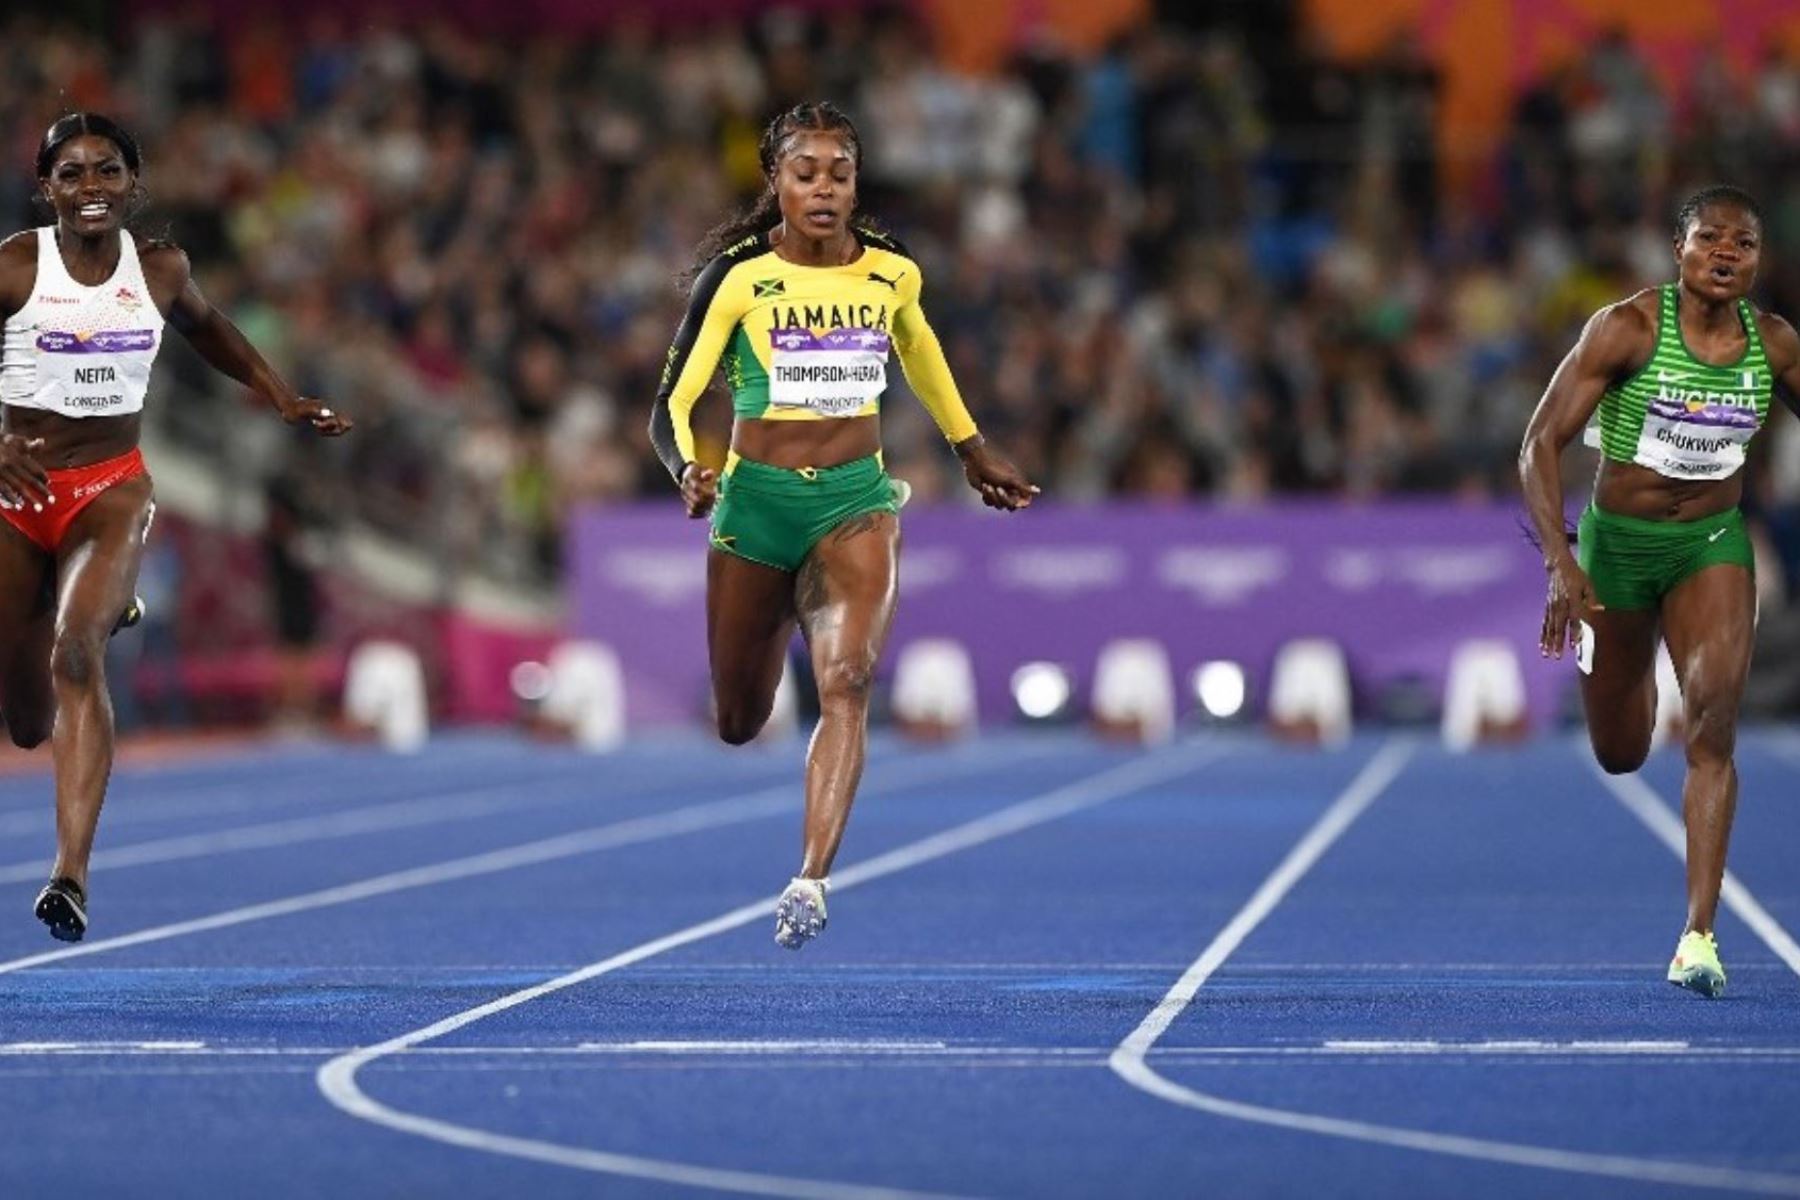 La jamaicana Elaine Thompson-Herah, campeona olímpica en Tokio, dominó la final de 100 m de los Juegos de la Commonwealth.